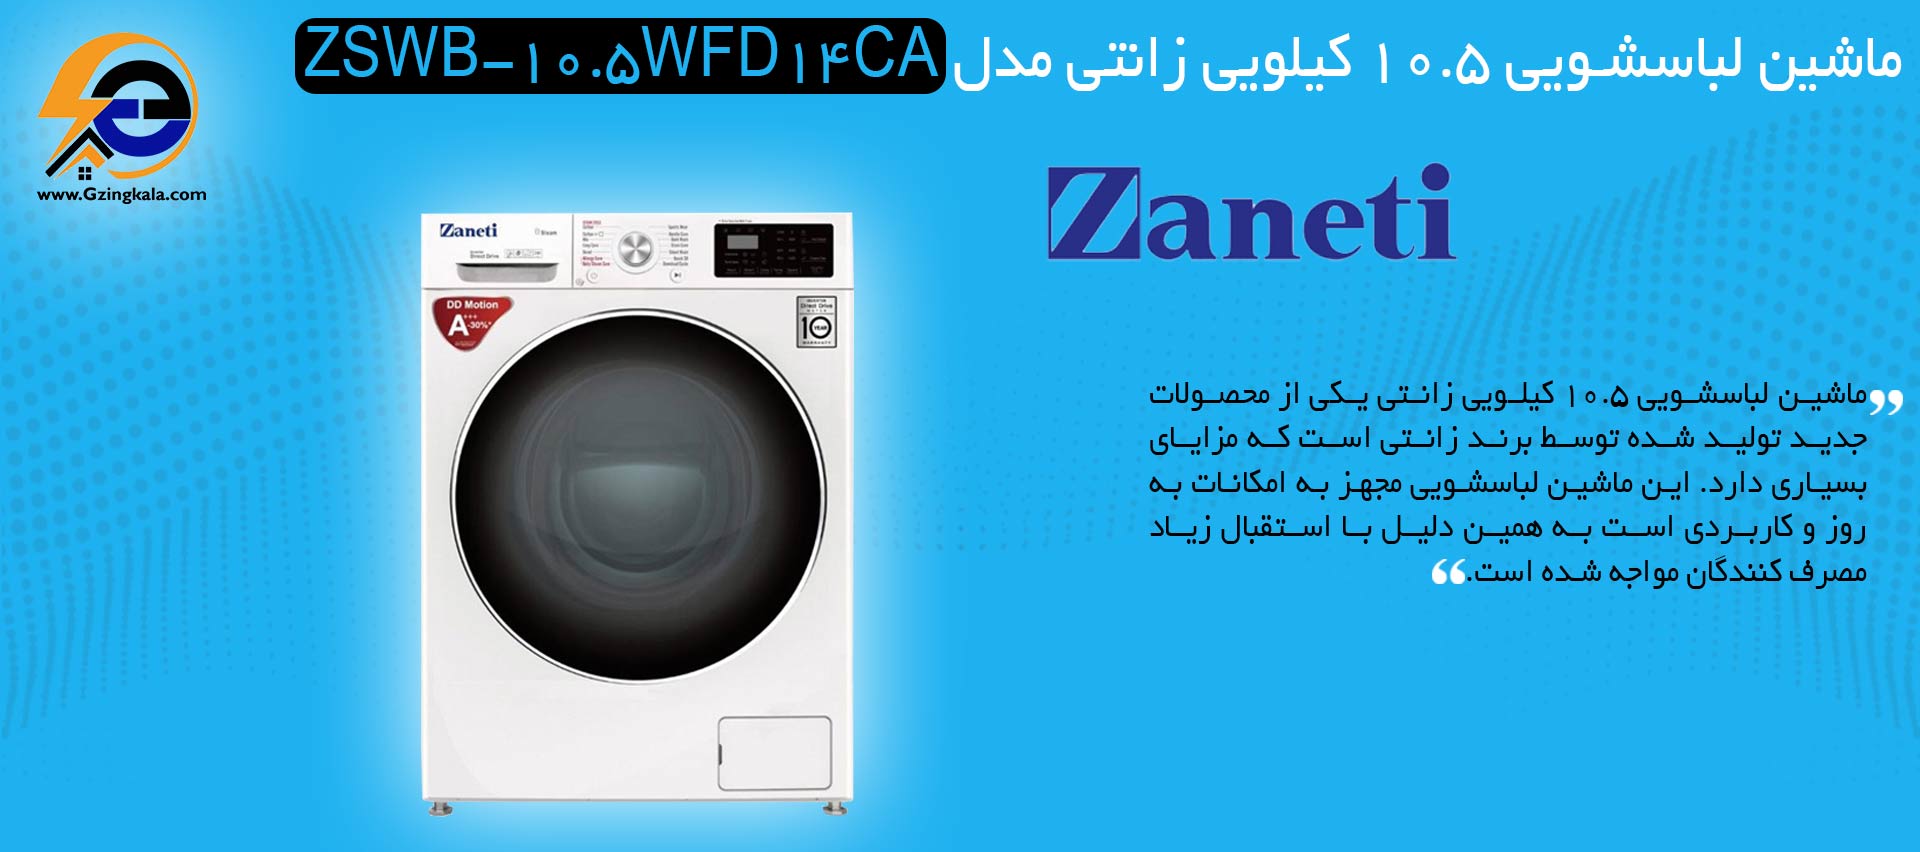 ماشین لباسشویی 10.5 کیلویی زانتی مدل ZSWB-10.5WFD14CA